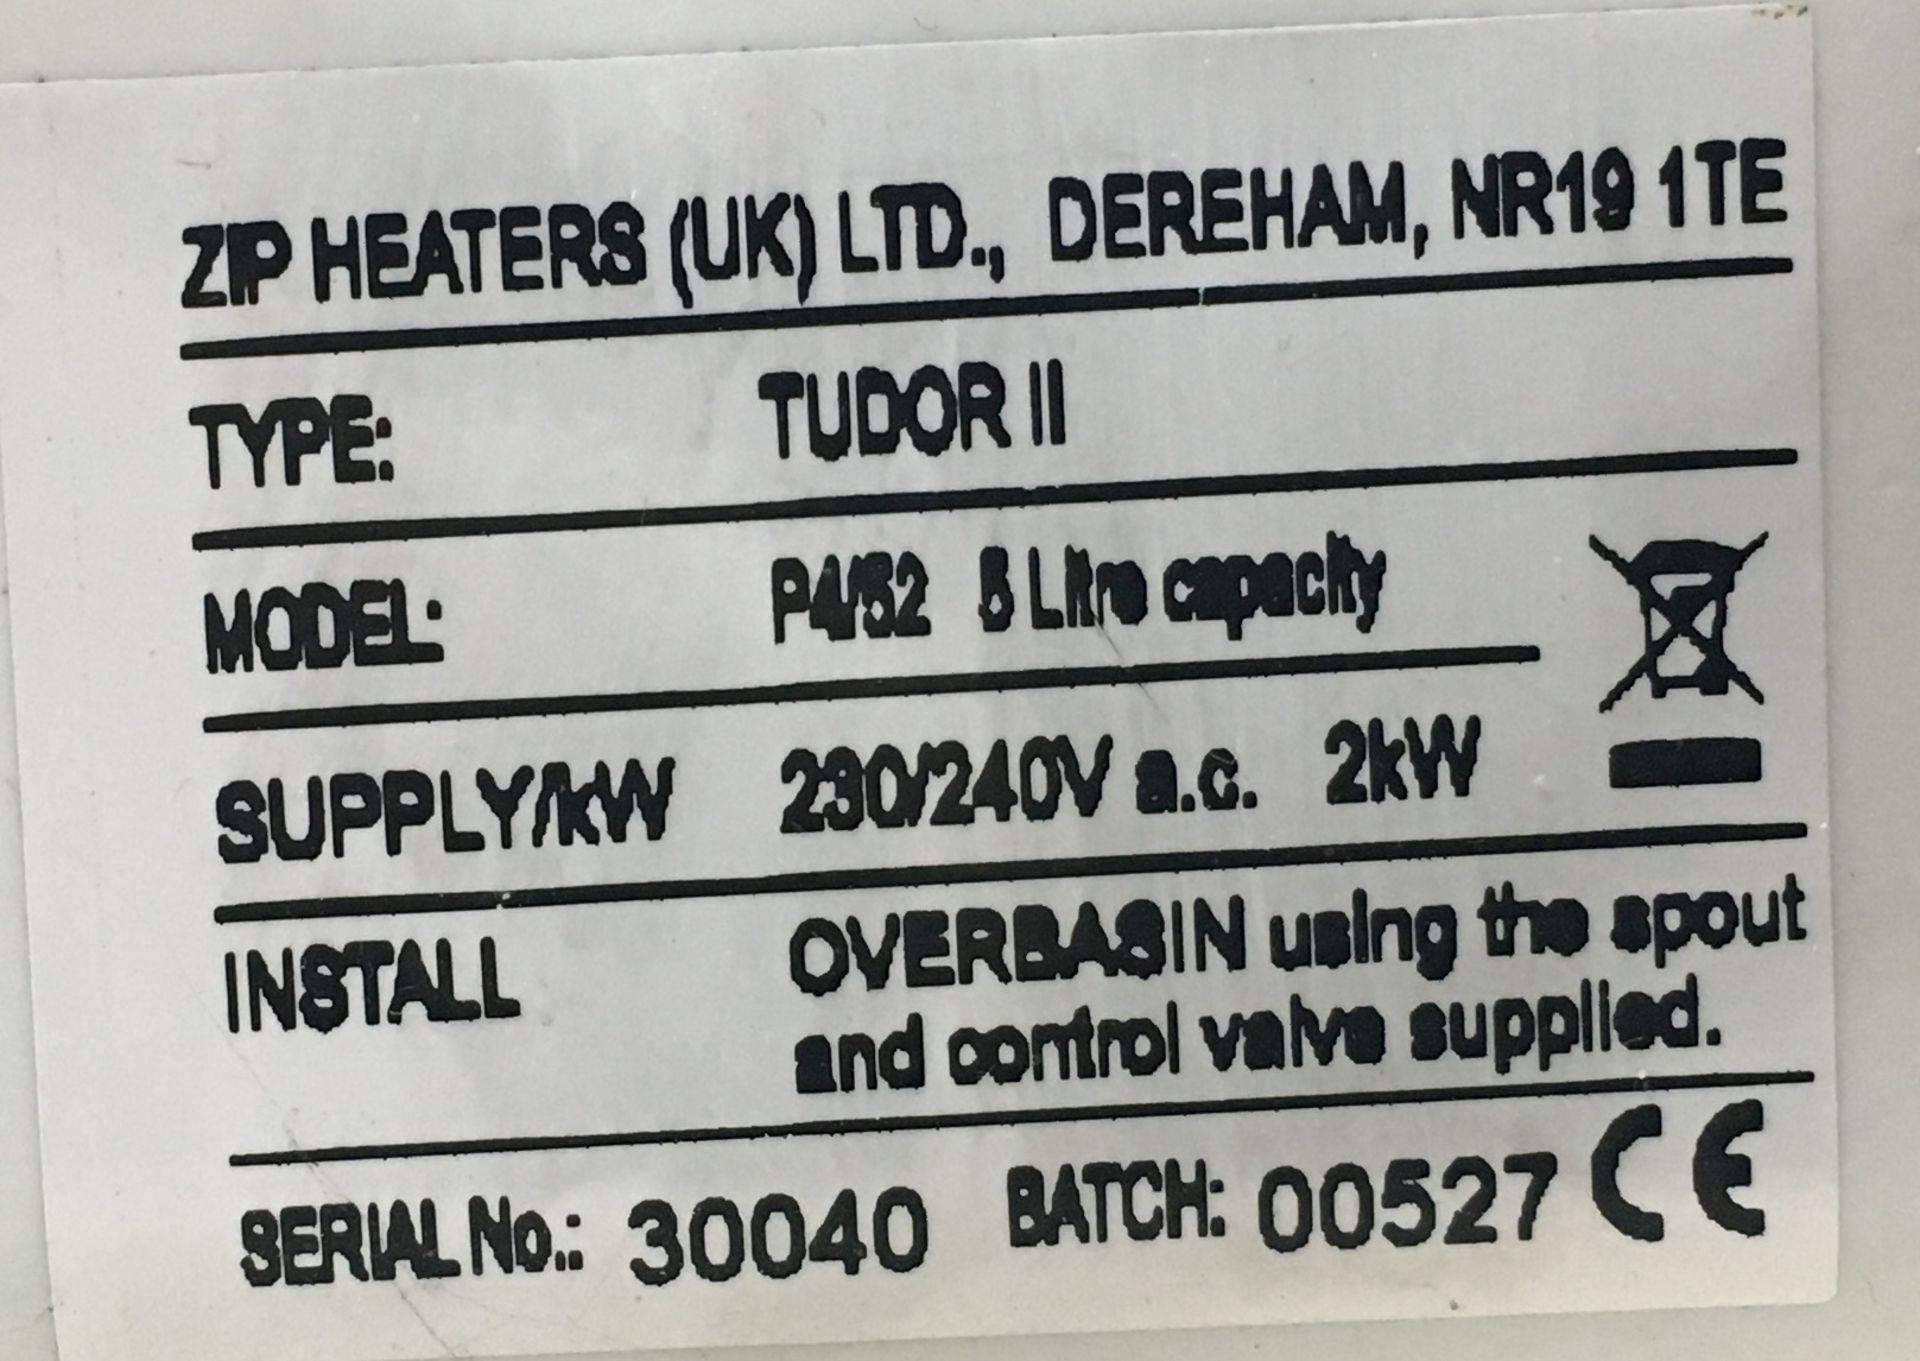 Zip Tudor 2 P452 8 Litre Water Boiler - Image 2 of 2